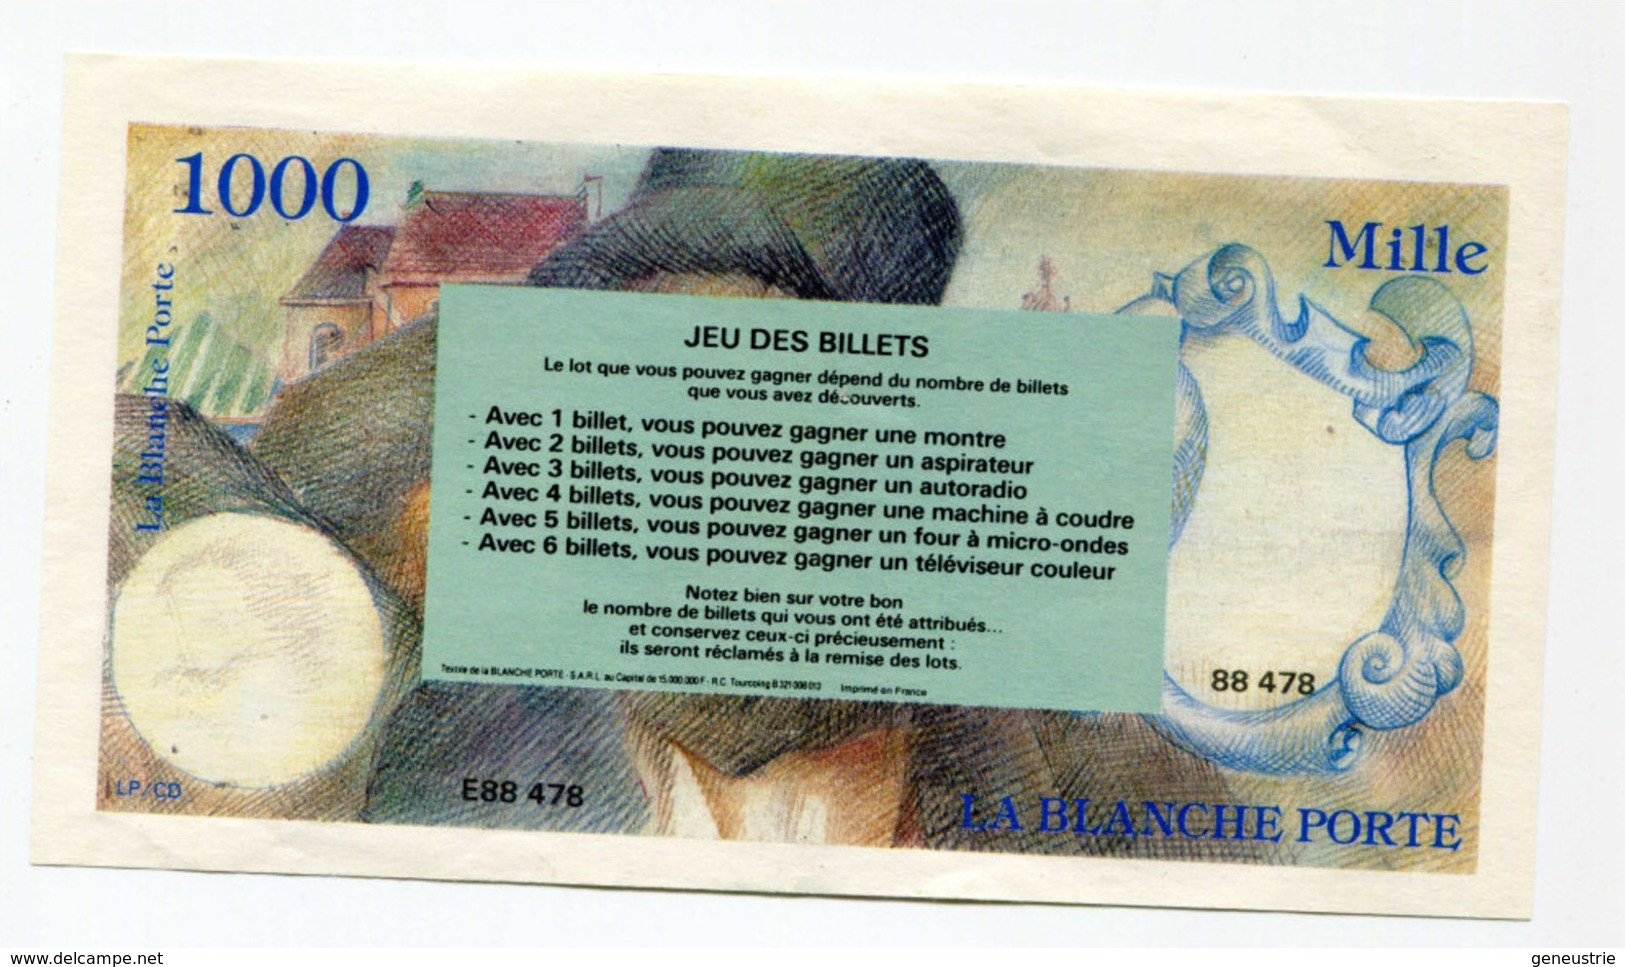 Billet Publicitaire De 1000 Francs Inspiré De Delacroix "La Blanche Porte" French Bank Note - Specimen